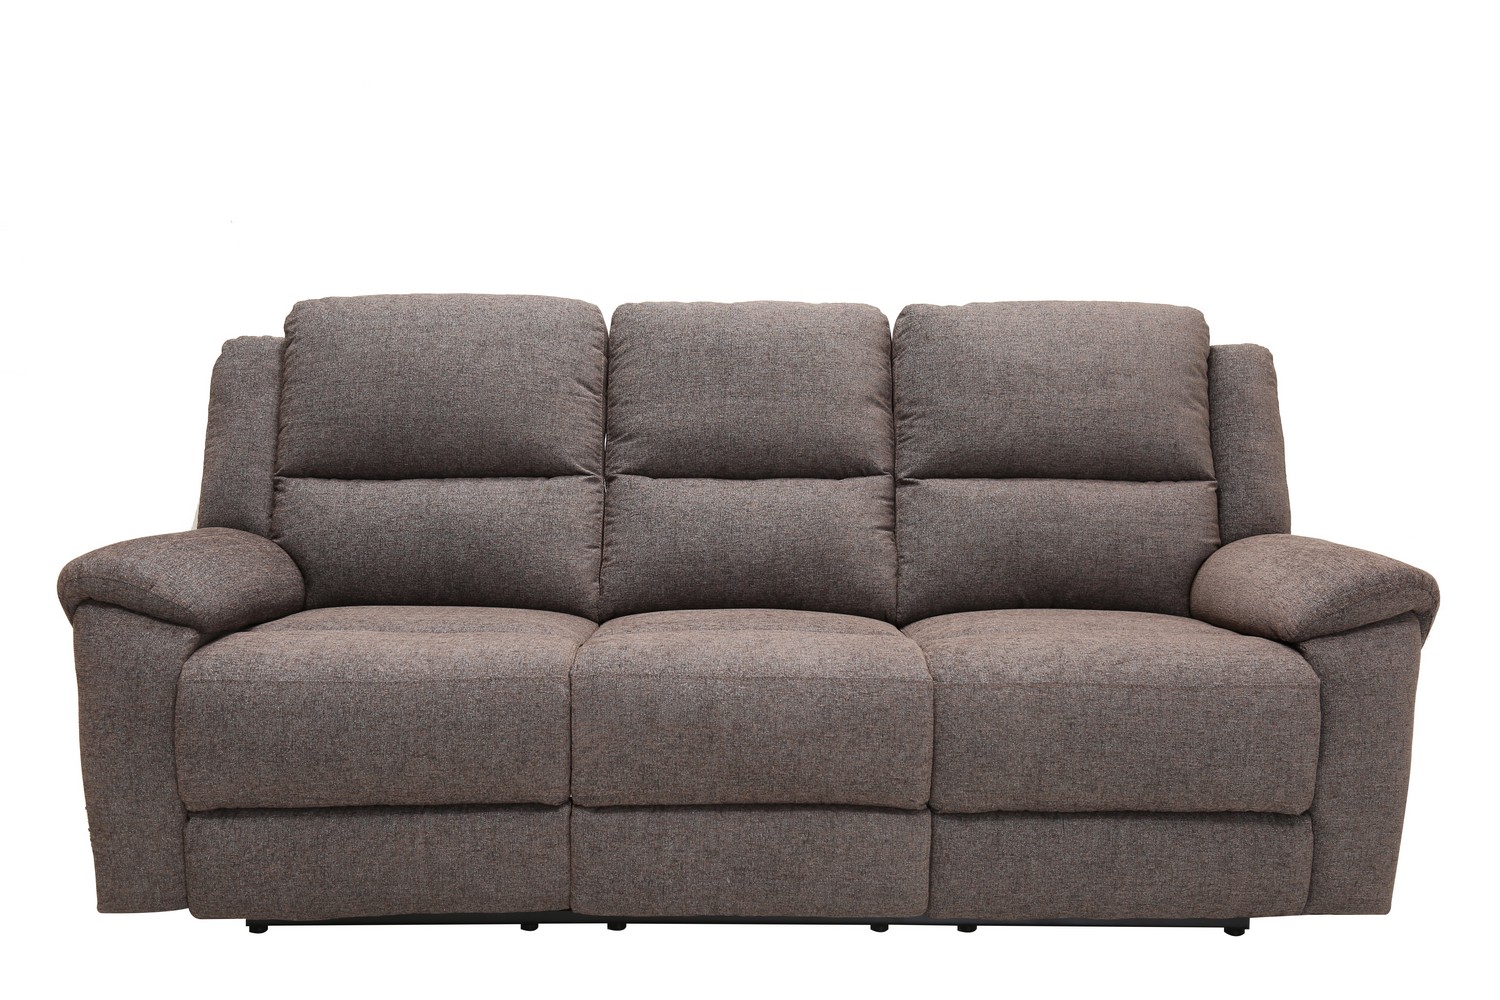 39" Modern Grey Fabric Power Reclining Sofa